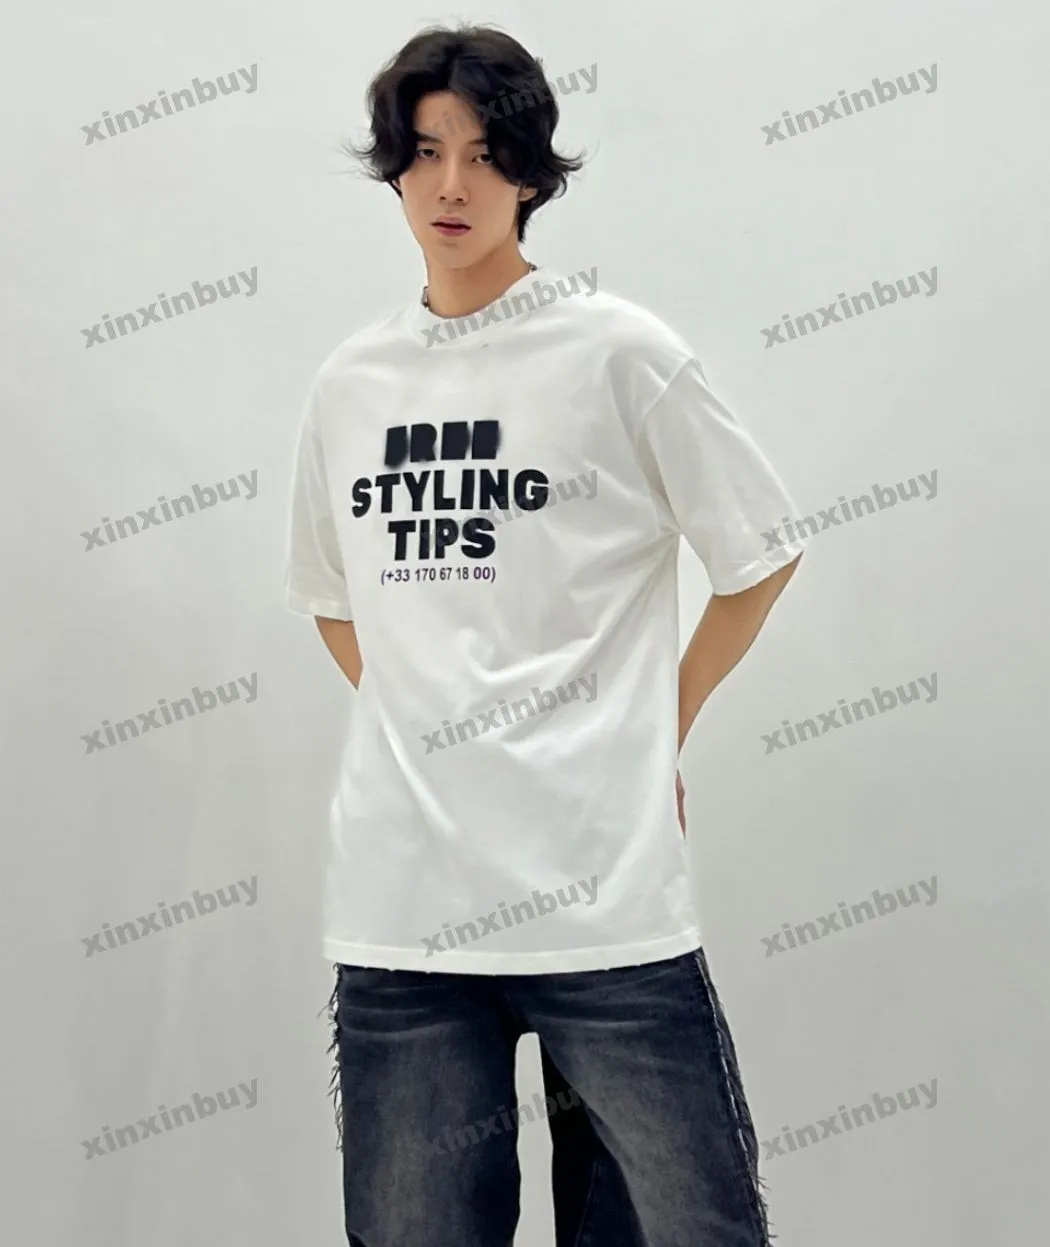 Xinxinbuy Men Designer Tee T-shirt 23SSSS Paris Conseils de style gratuit Print Impression Coton Coton Femmes Noir Blanc Blue Gray M-2XL